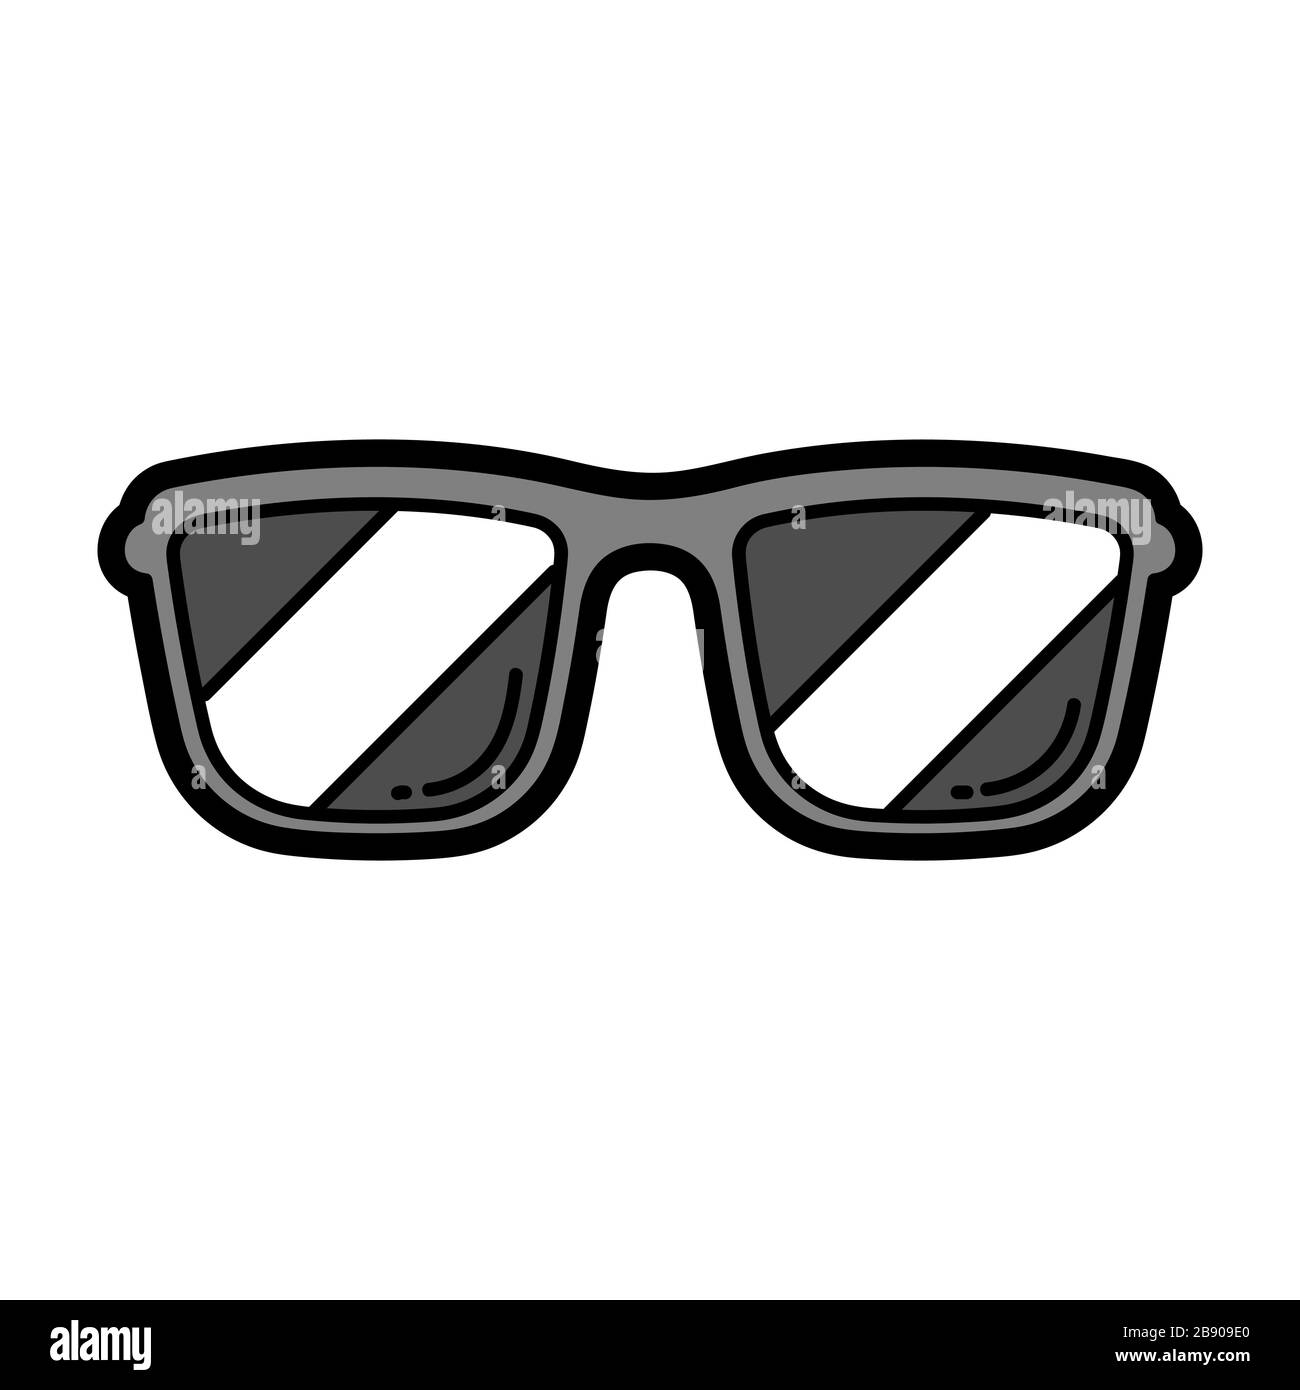 coton Submergé impulsion comment dessiner des lunettes de soleil realiste  Personnellement méthodologie séries